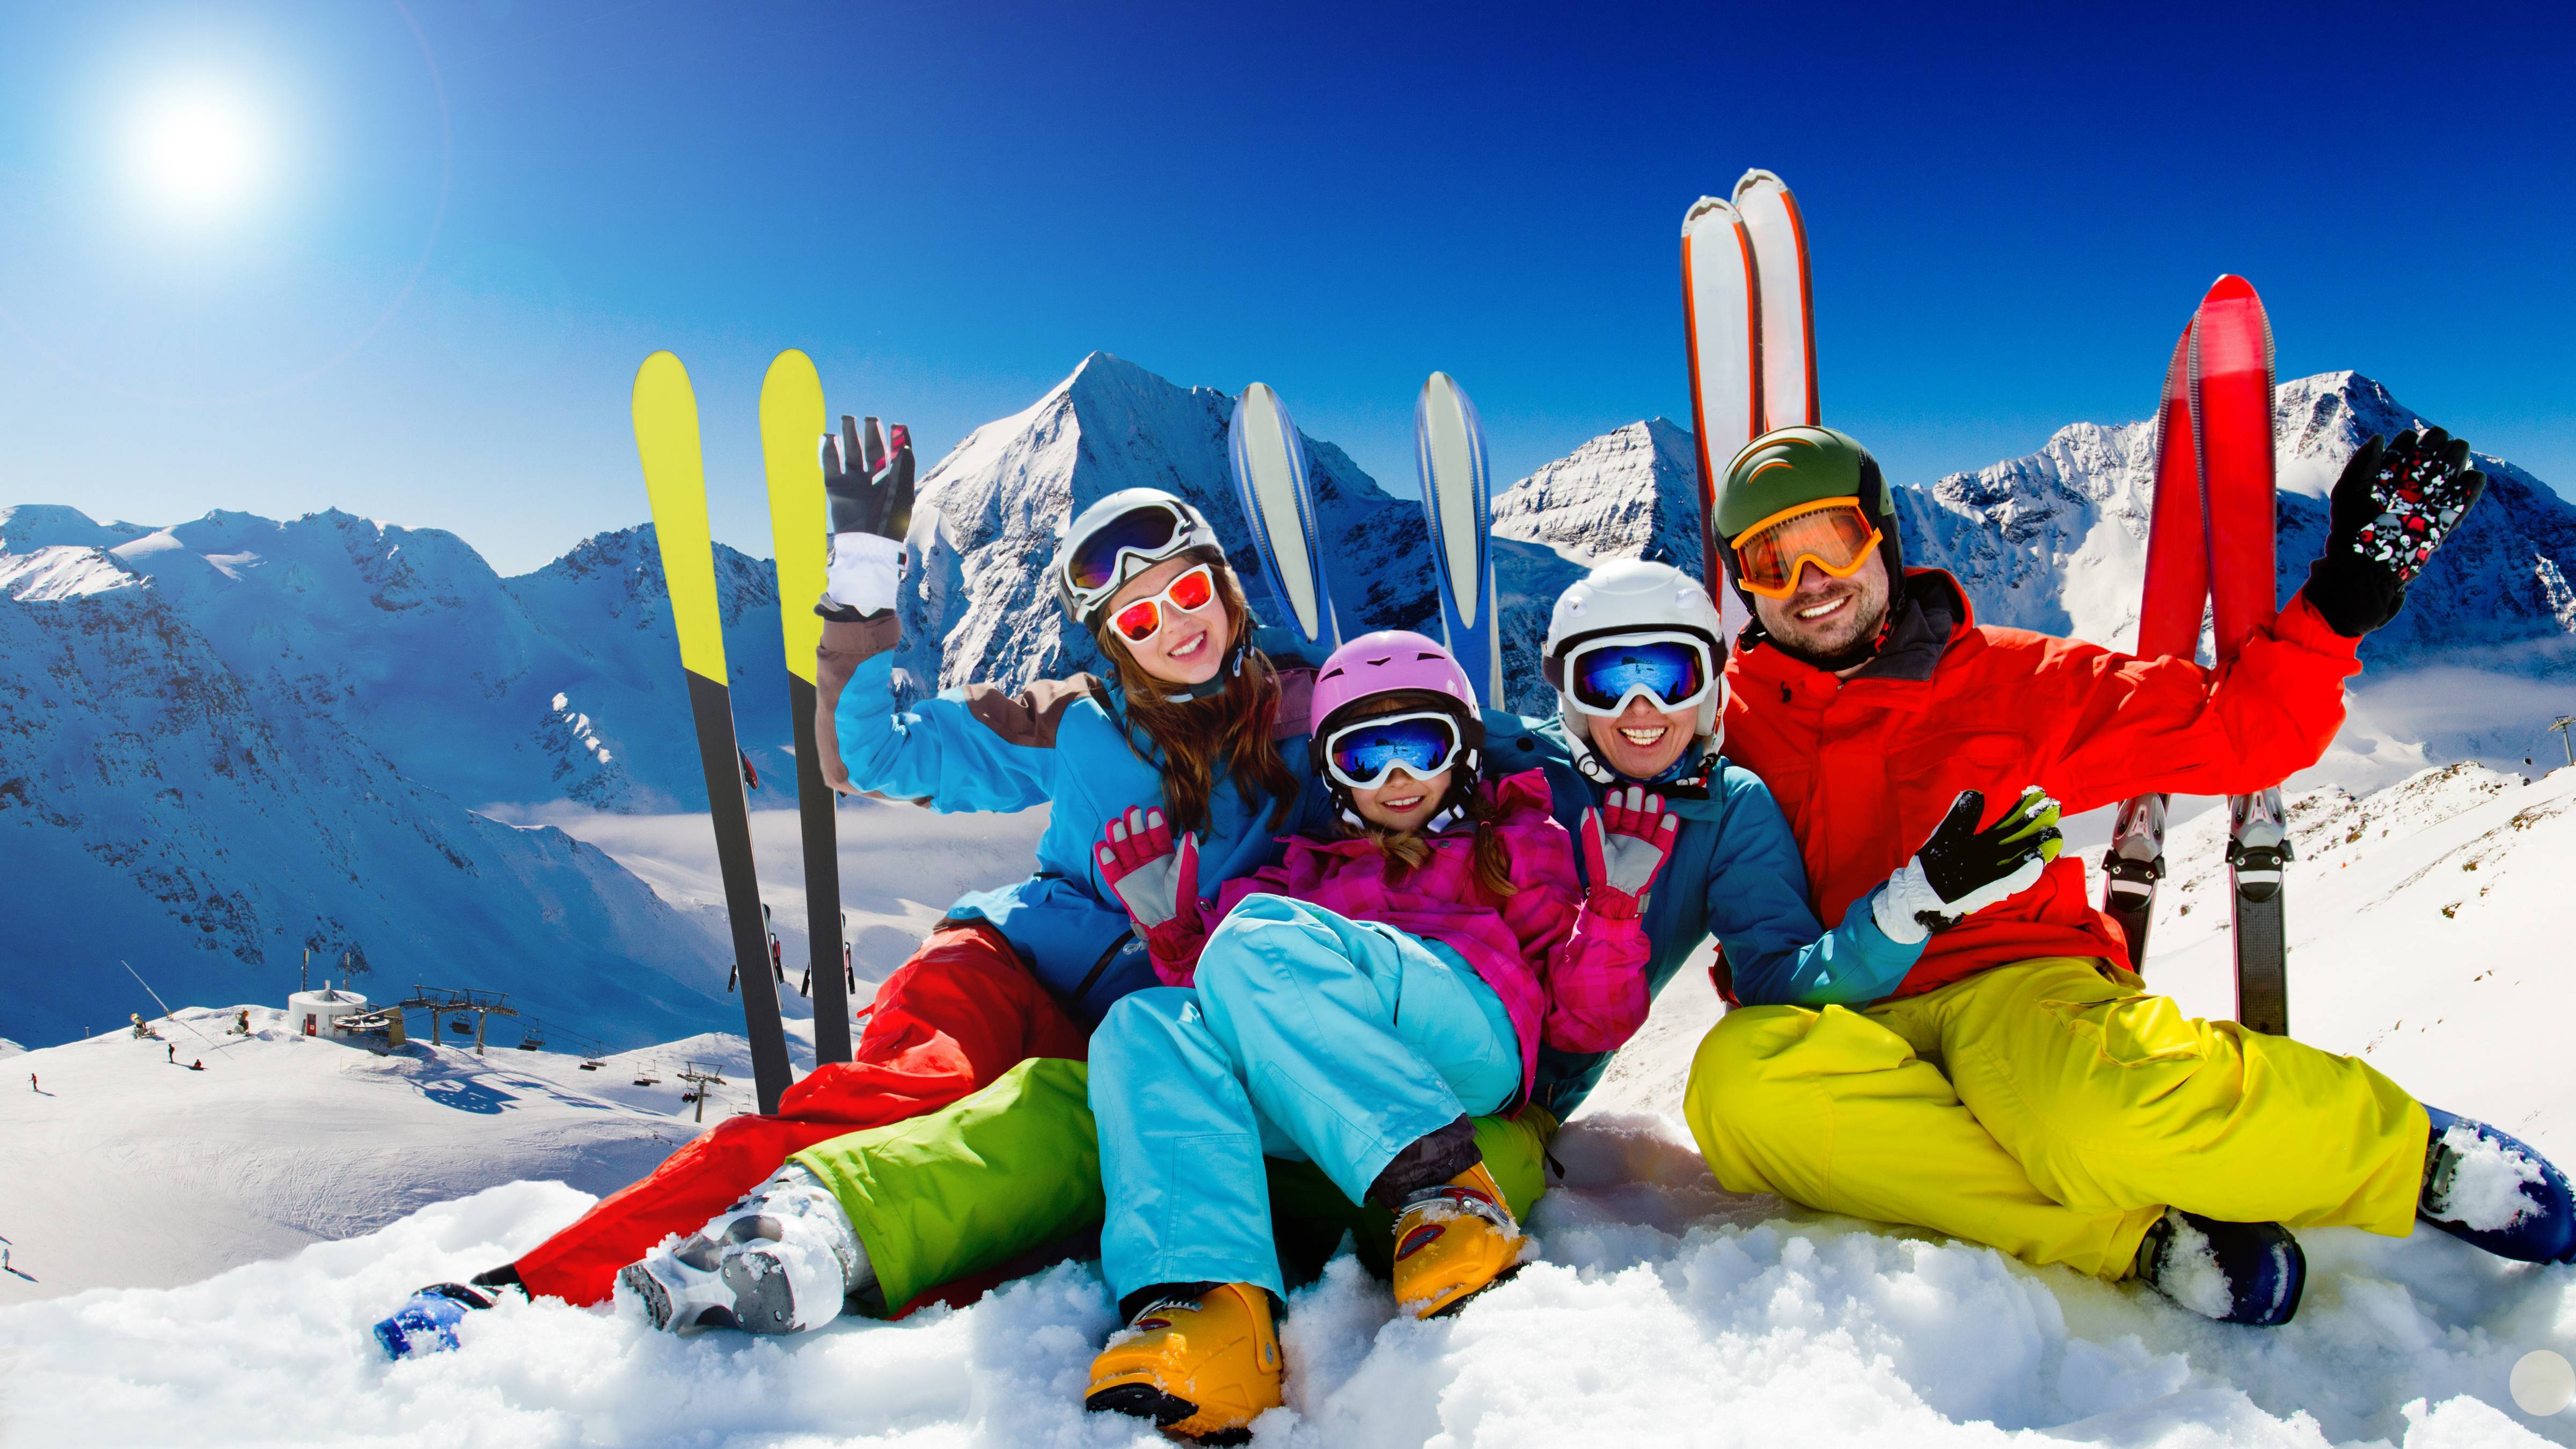 My friend skis. Семья на горных лыжах. Горнолыжный спорт. Семья катается на лыжах в горах. Зимний курорт.